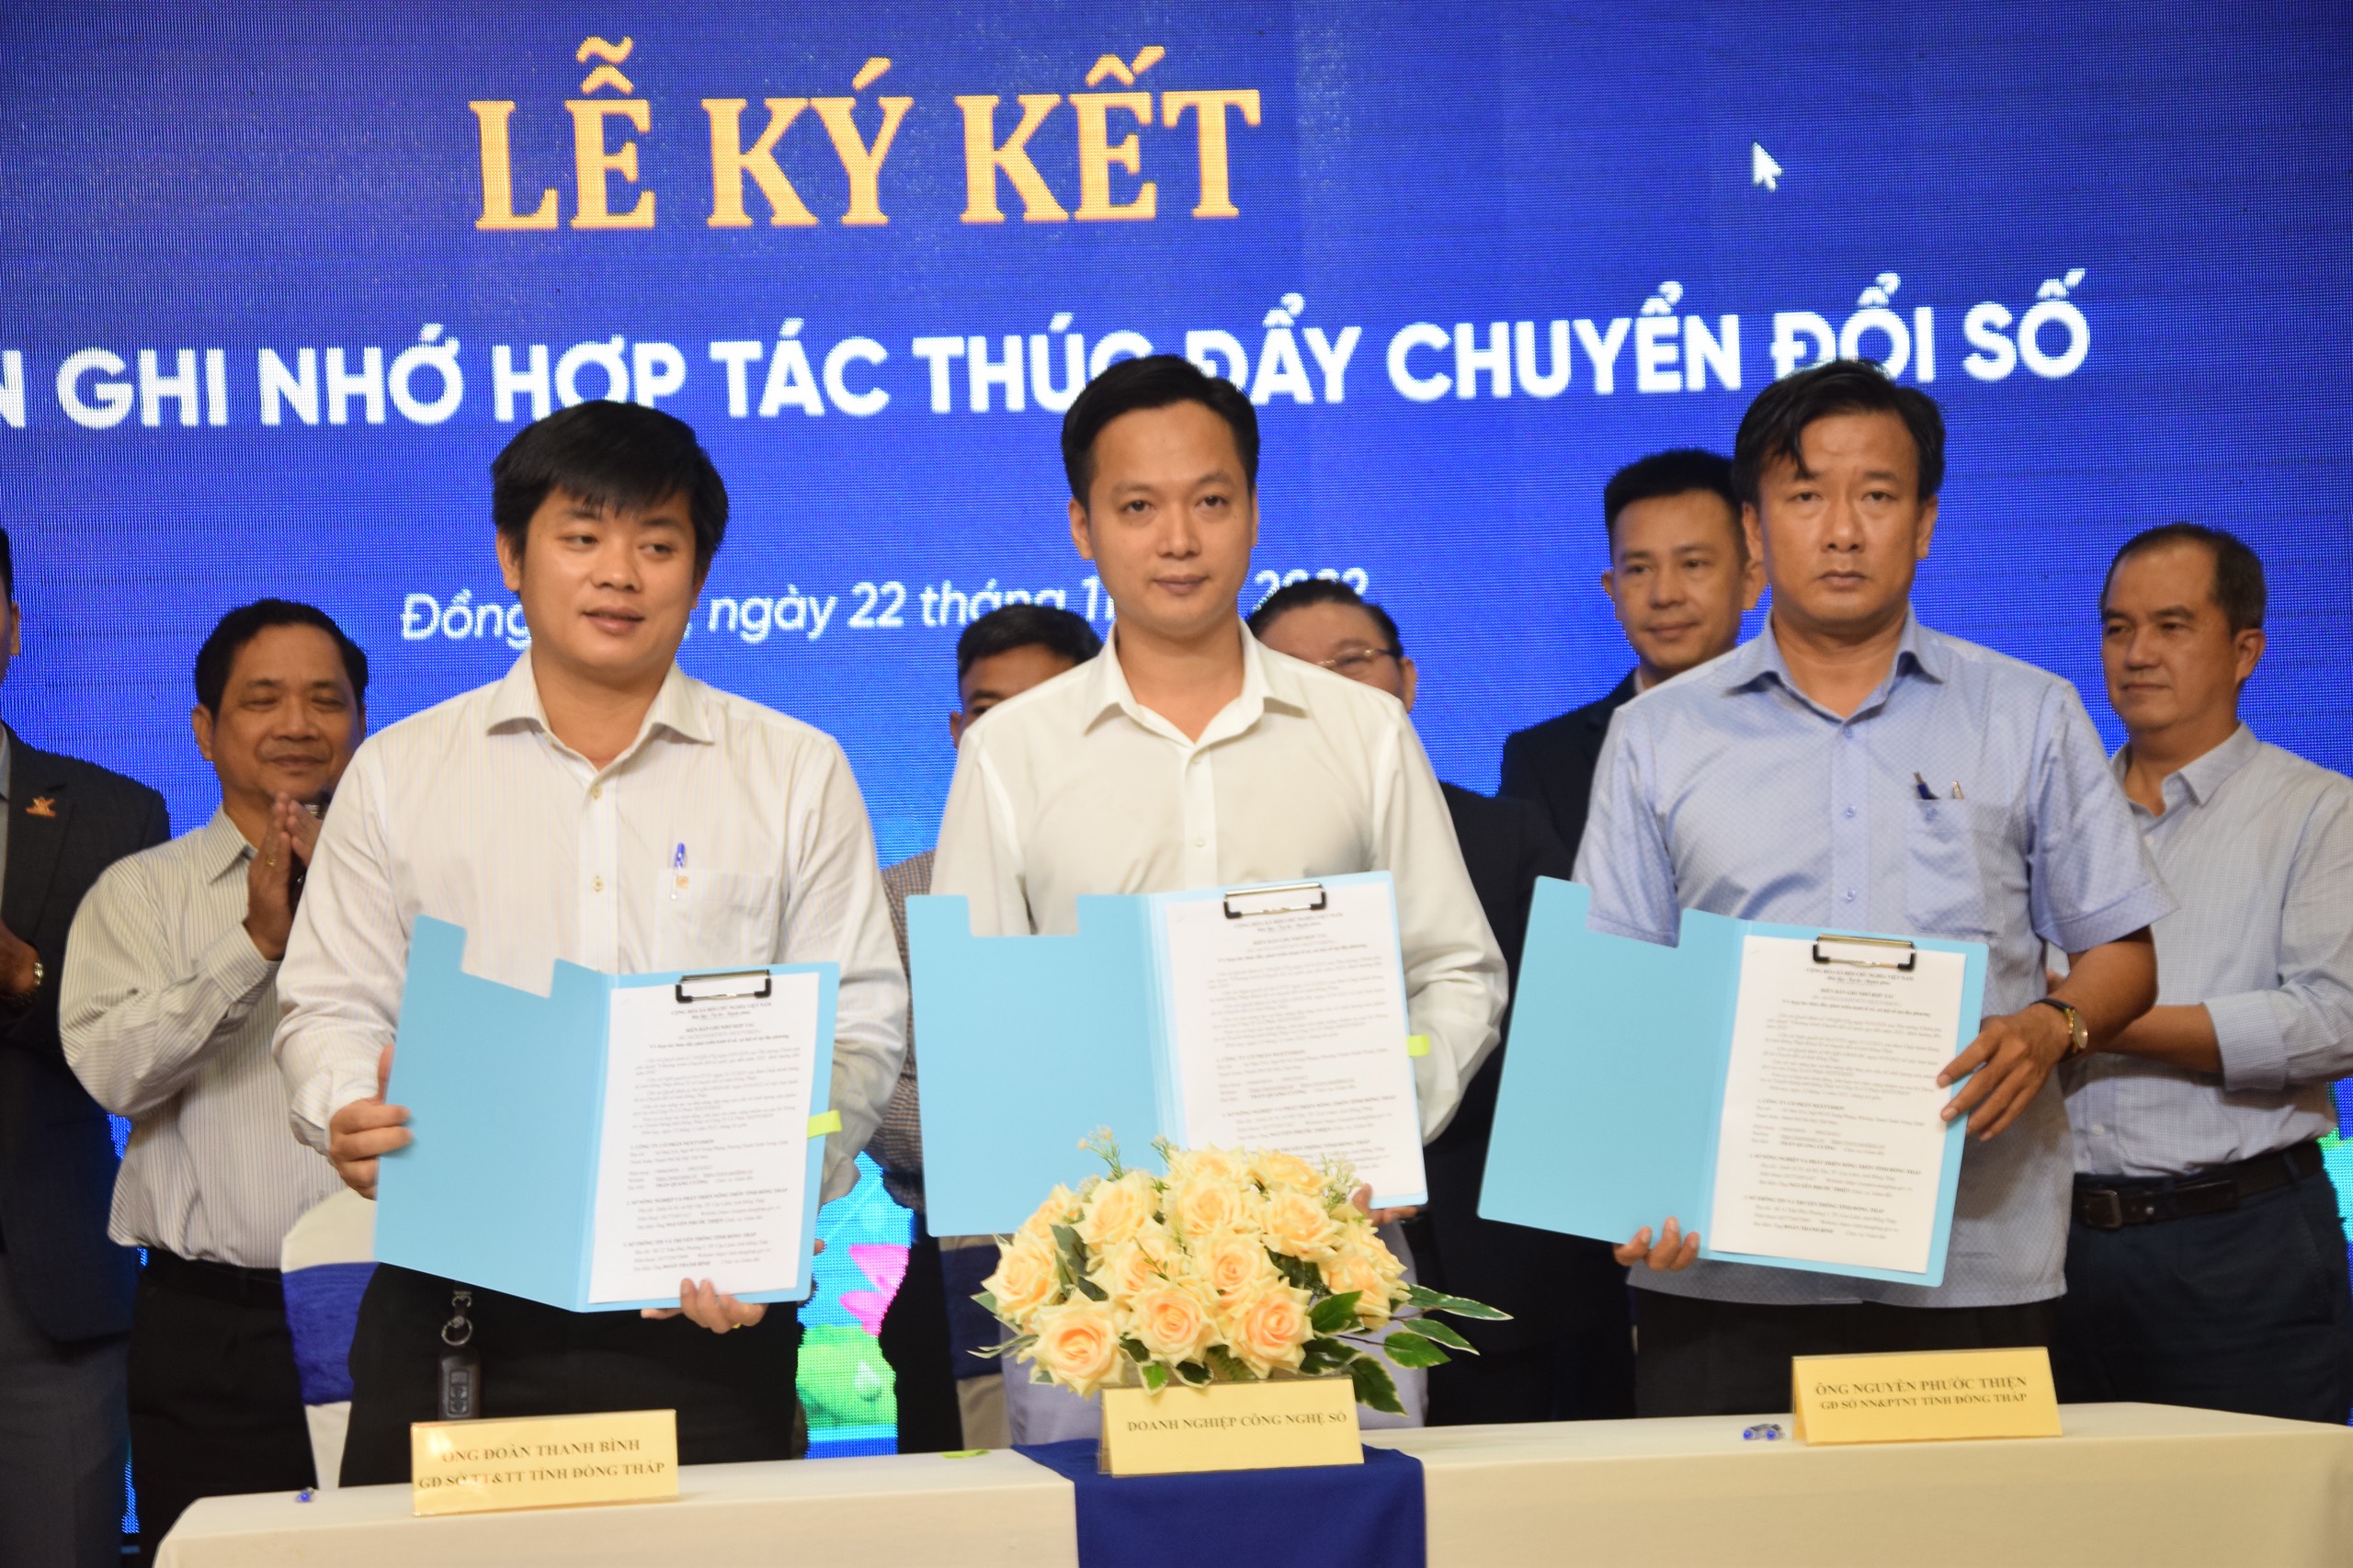 NextX ký biên bản ghi nhớ hợp tác thúc đẩy chuyển đổi số TT&TT và NN&PTNT tỉnh Đồng Tháp